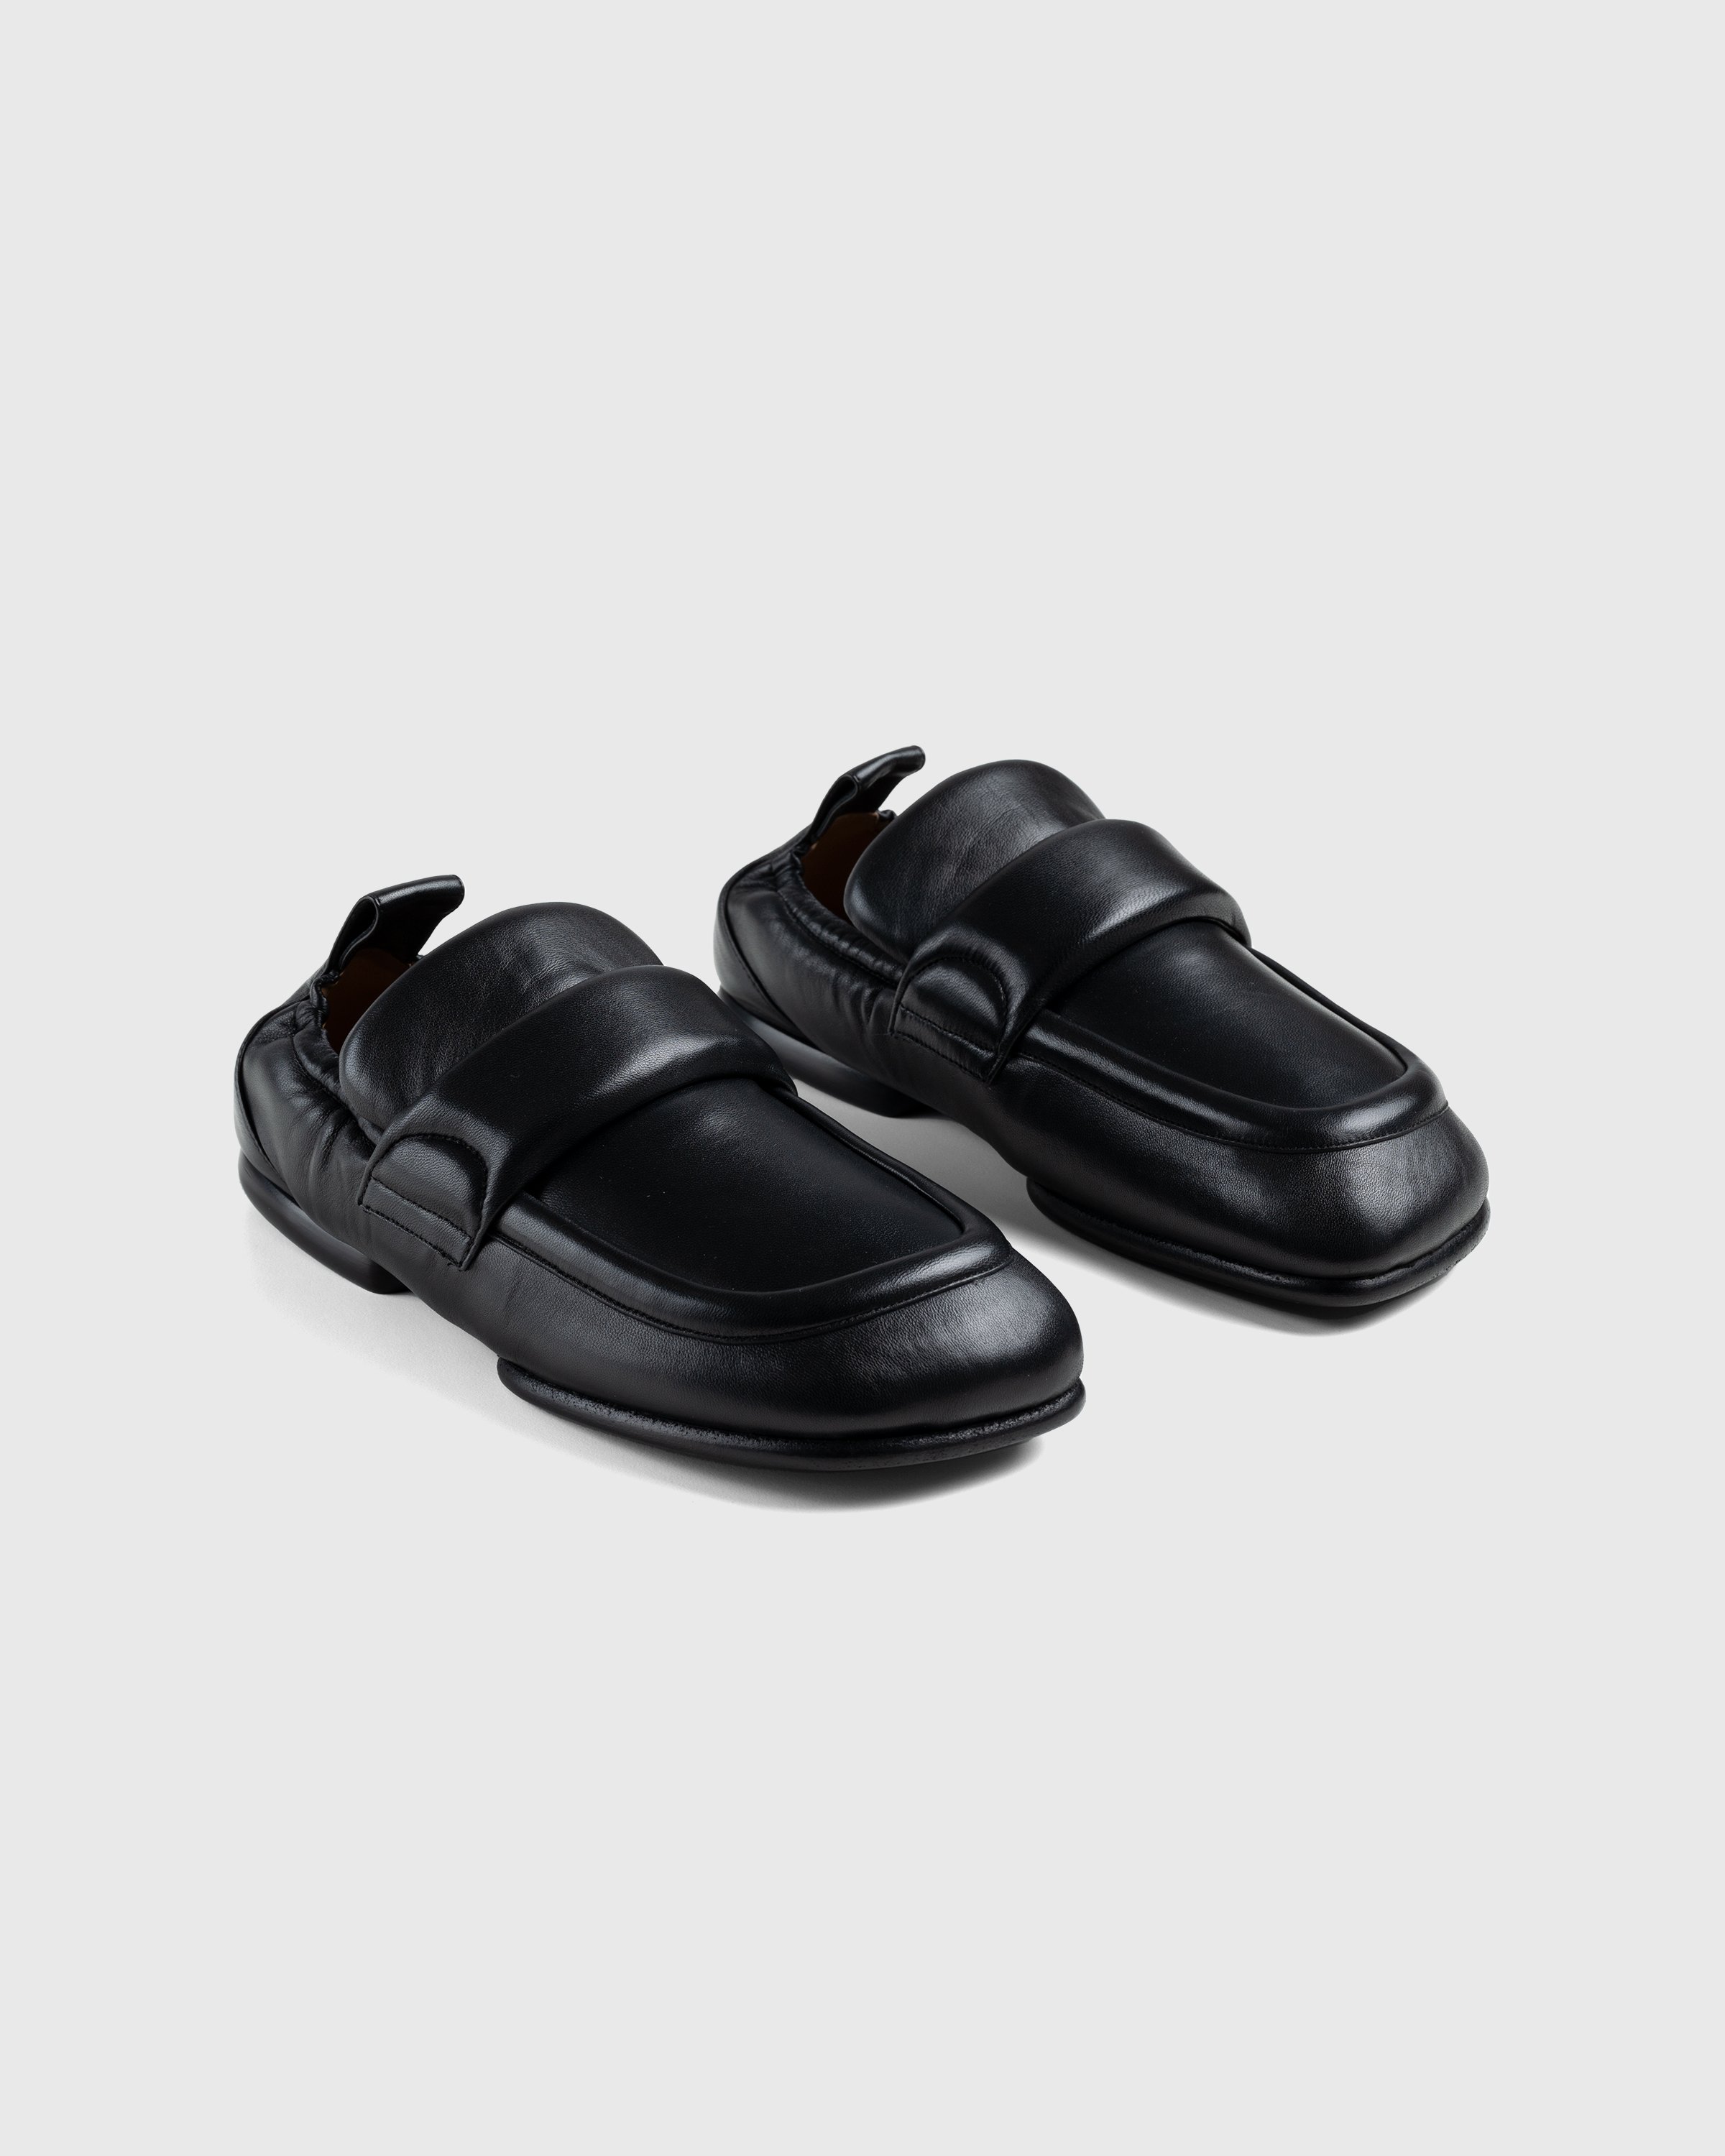 Dries van Noten - Padded Loafers - Footwear - Black - Image 3